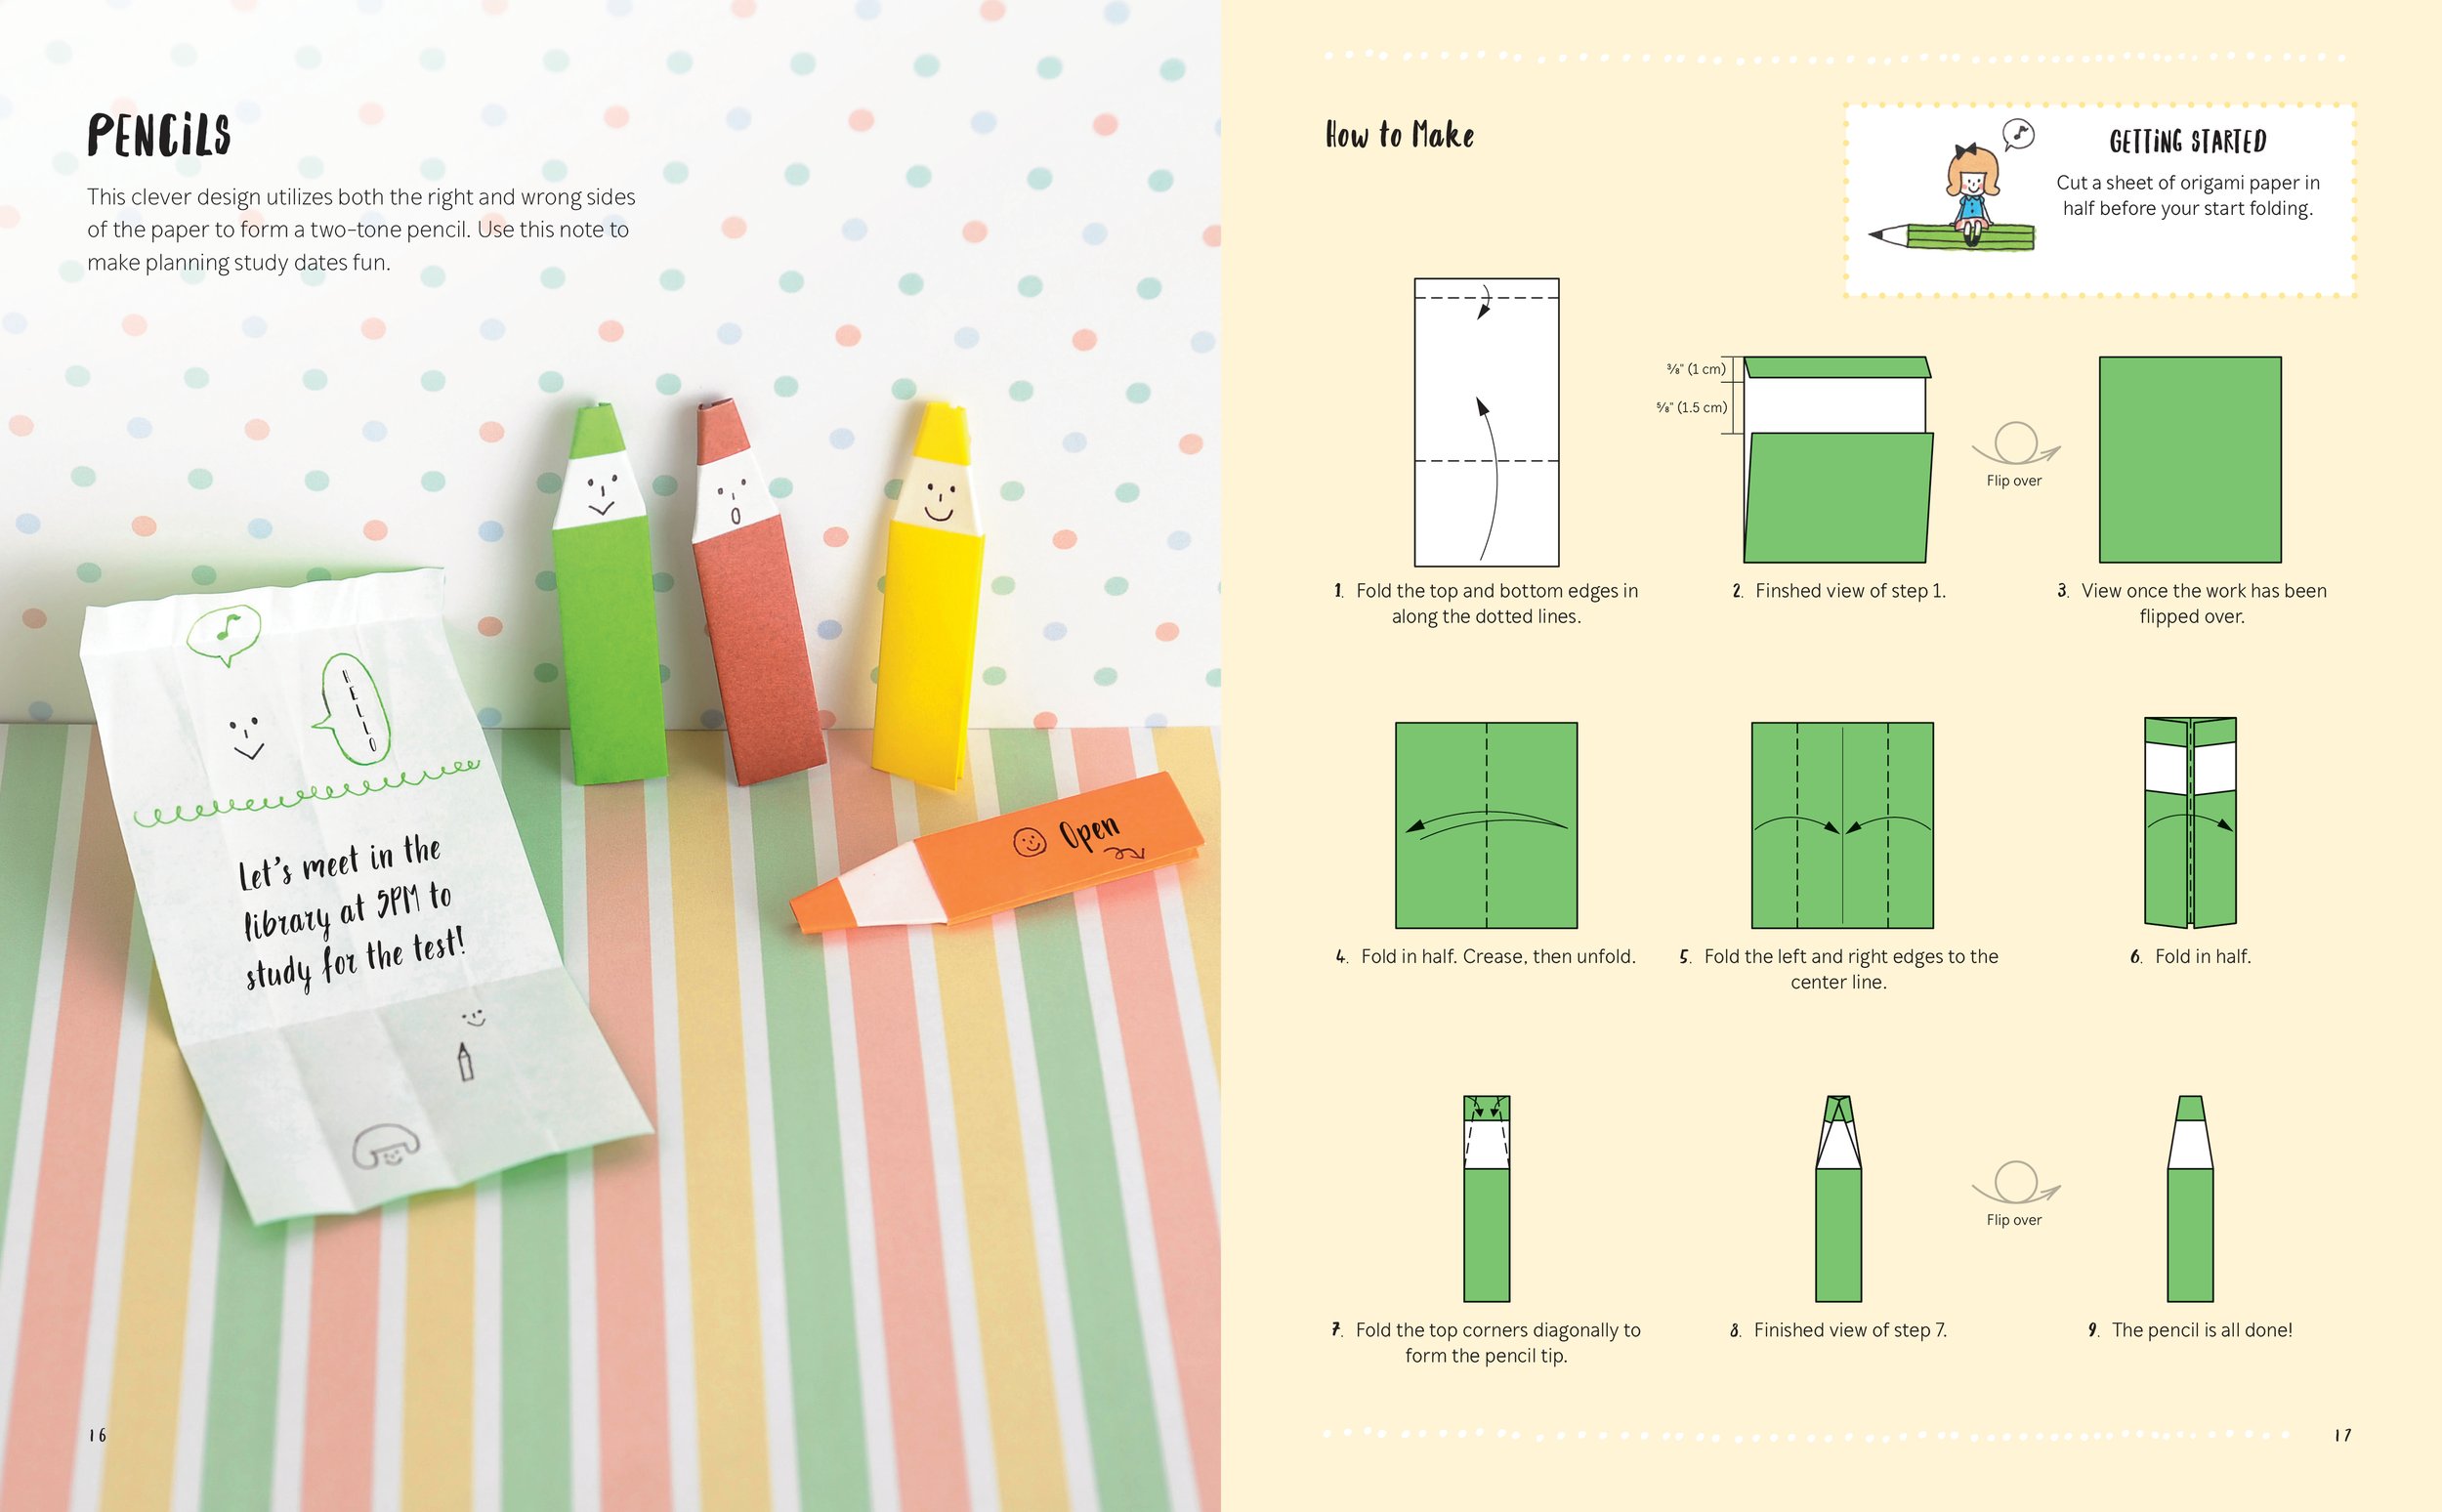 Hello Origami Kit — Zakka Workshop Retail